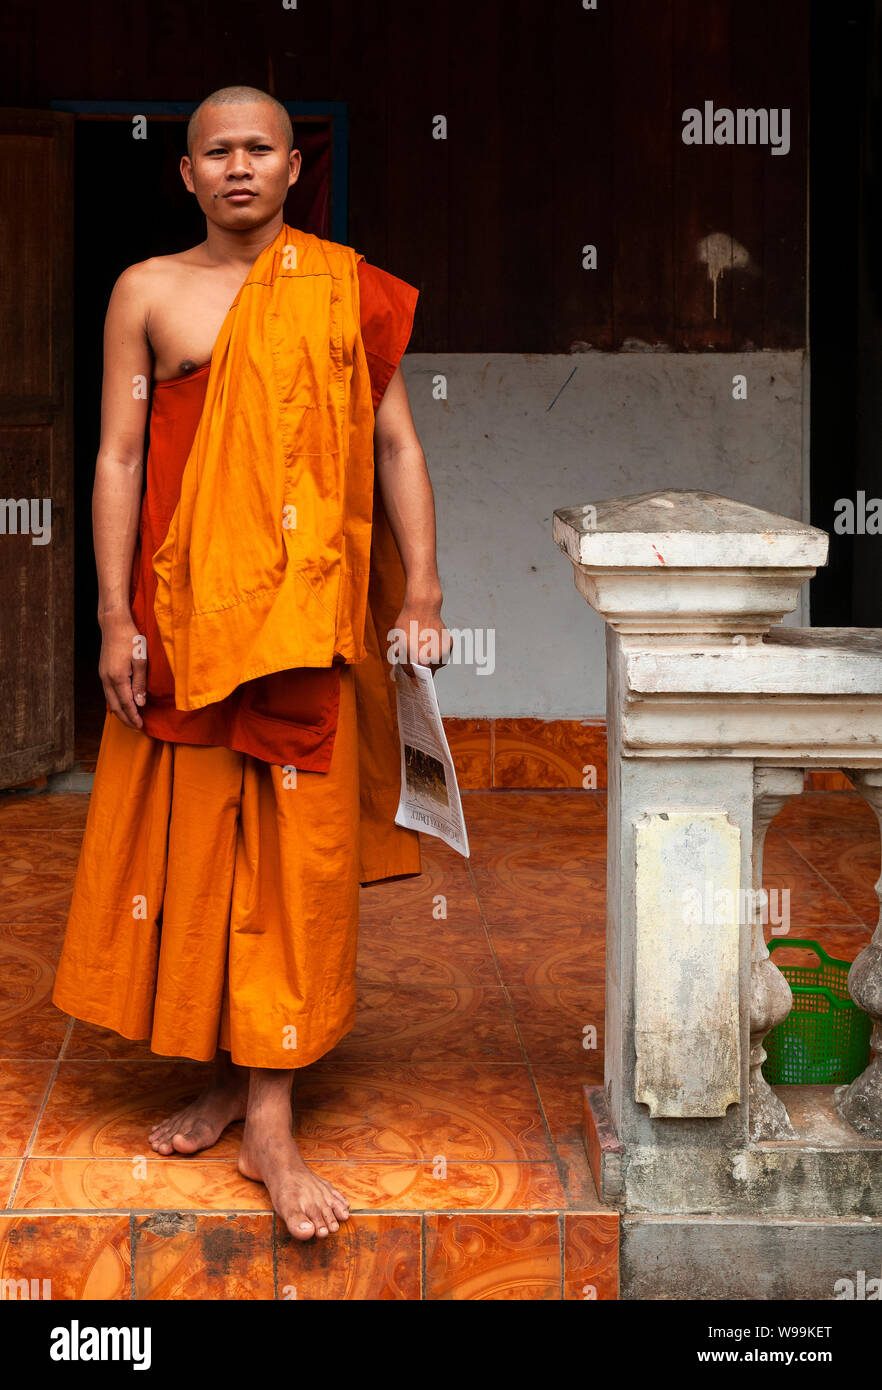 Portrait d'un moine bouddhiste traditionnelle avec robe orange dans un temple building à Siem Reap, Angkor, Cambodge région. Banque D'Images